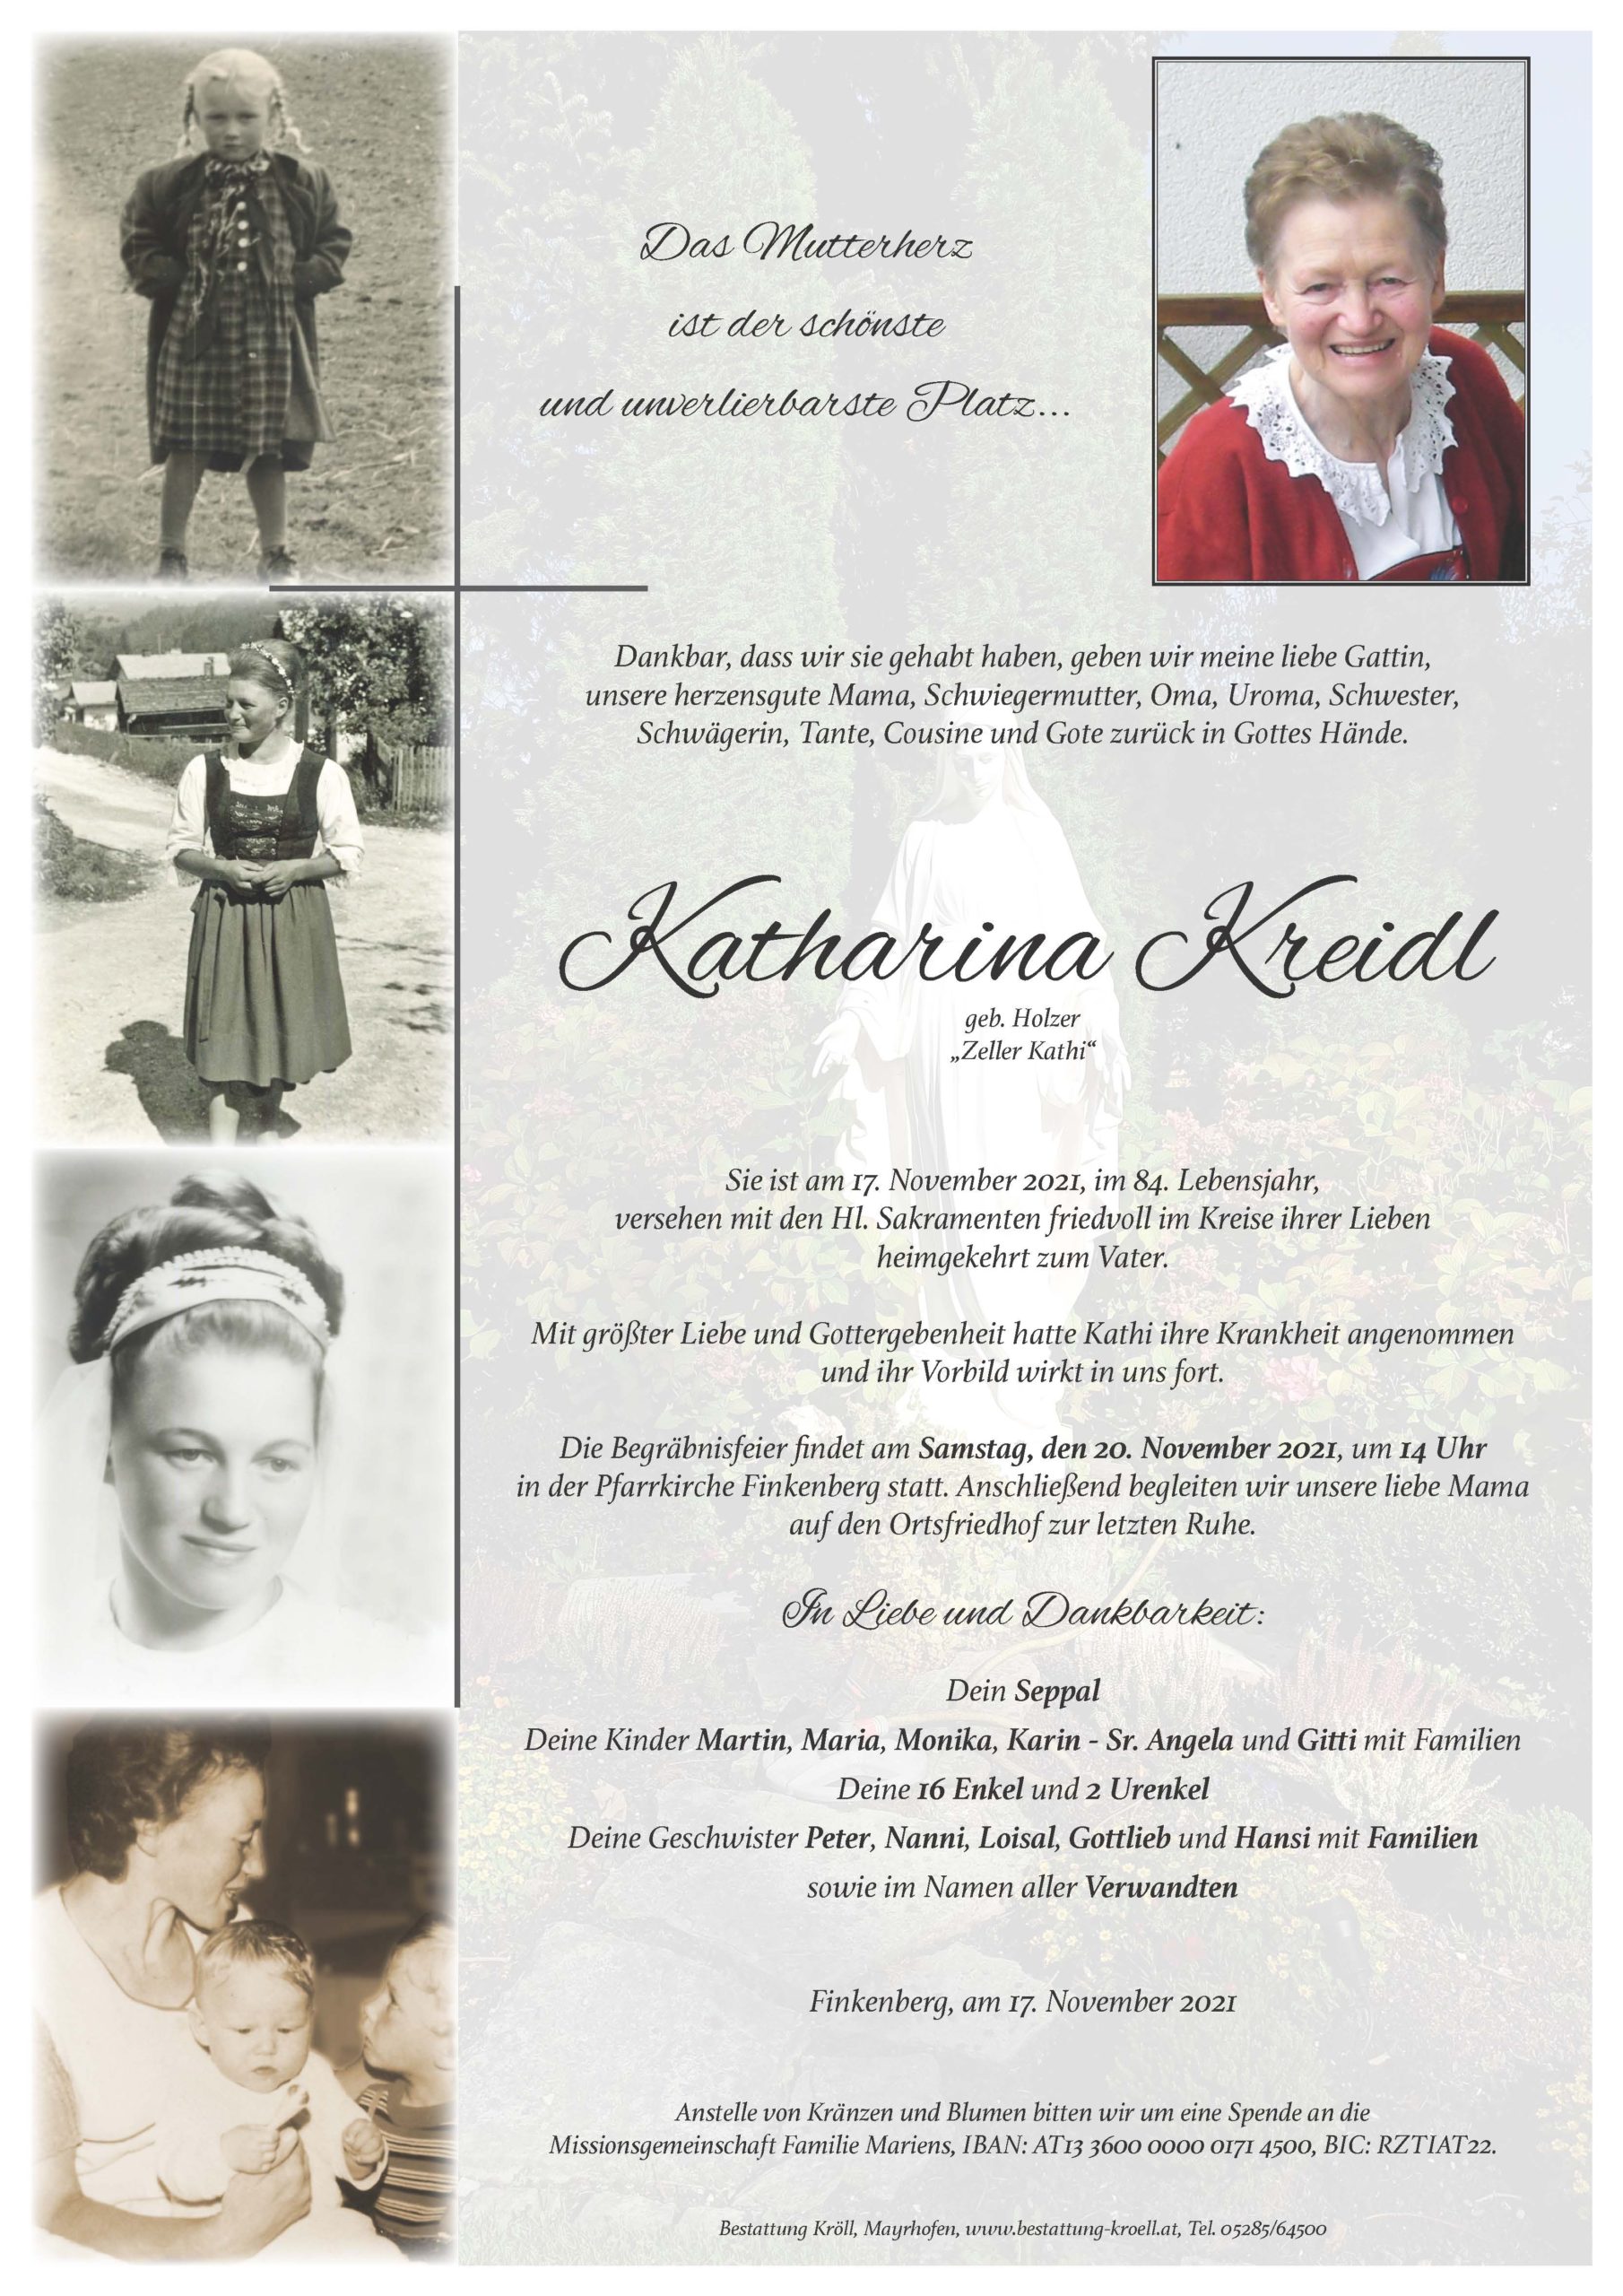 Katharina Kreidl – Kuratorium Bestattung